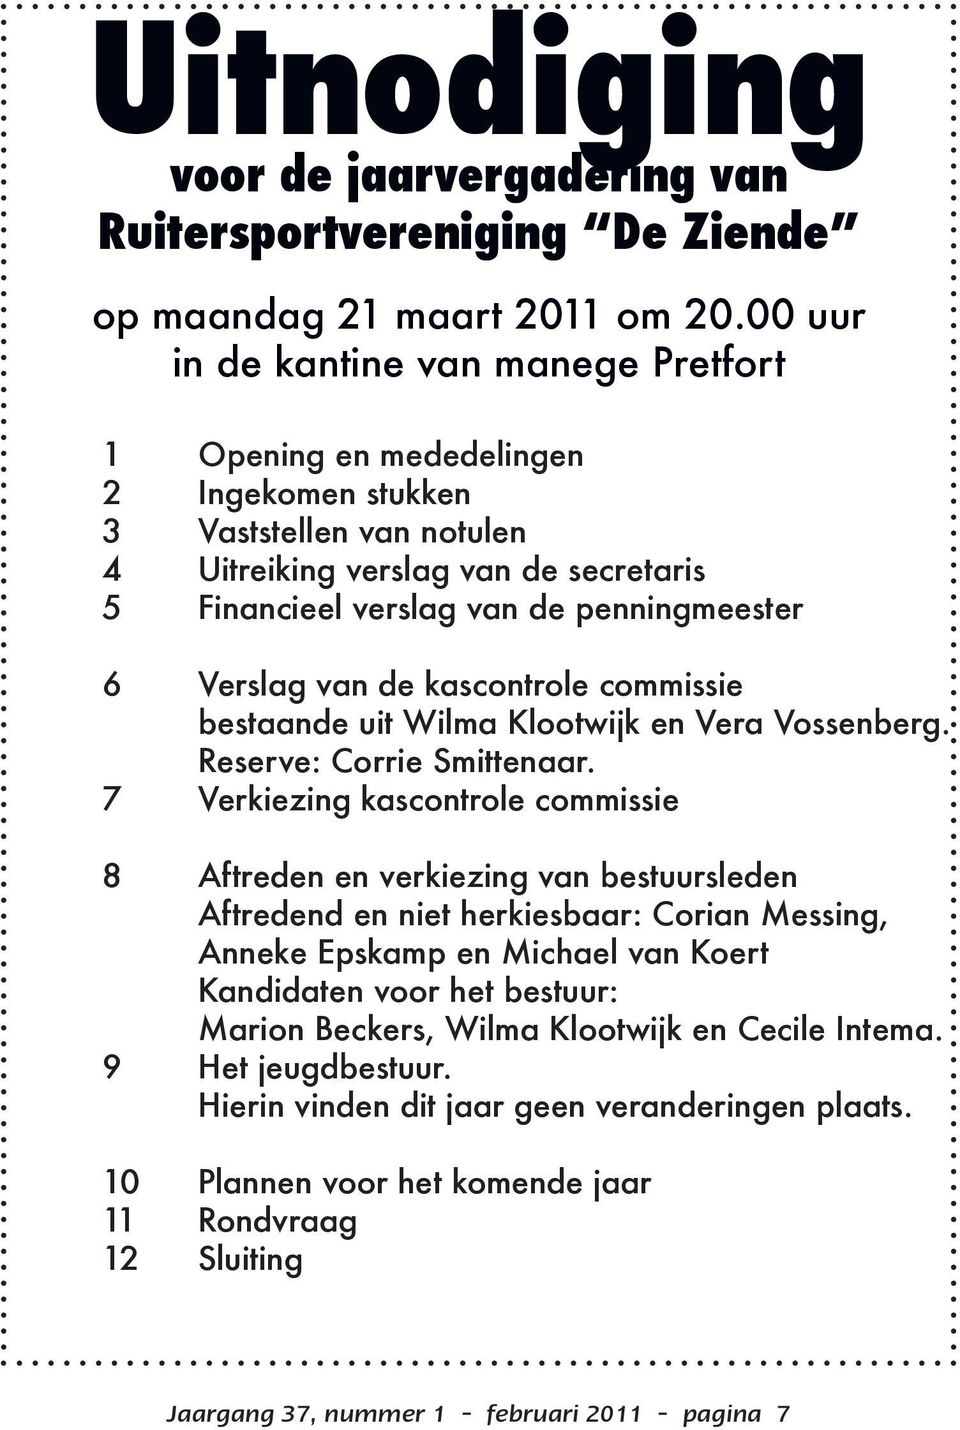 Verslag van de kascontrole commissie bestaande uit Wilma Klootwijk en Vera Vossenberg. Reserve: Corrie Smittenaar.